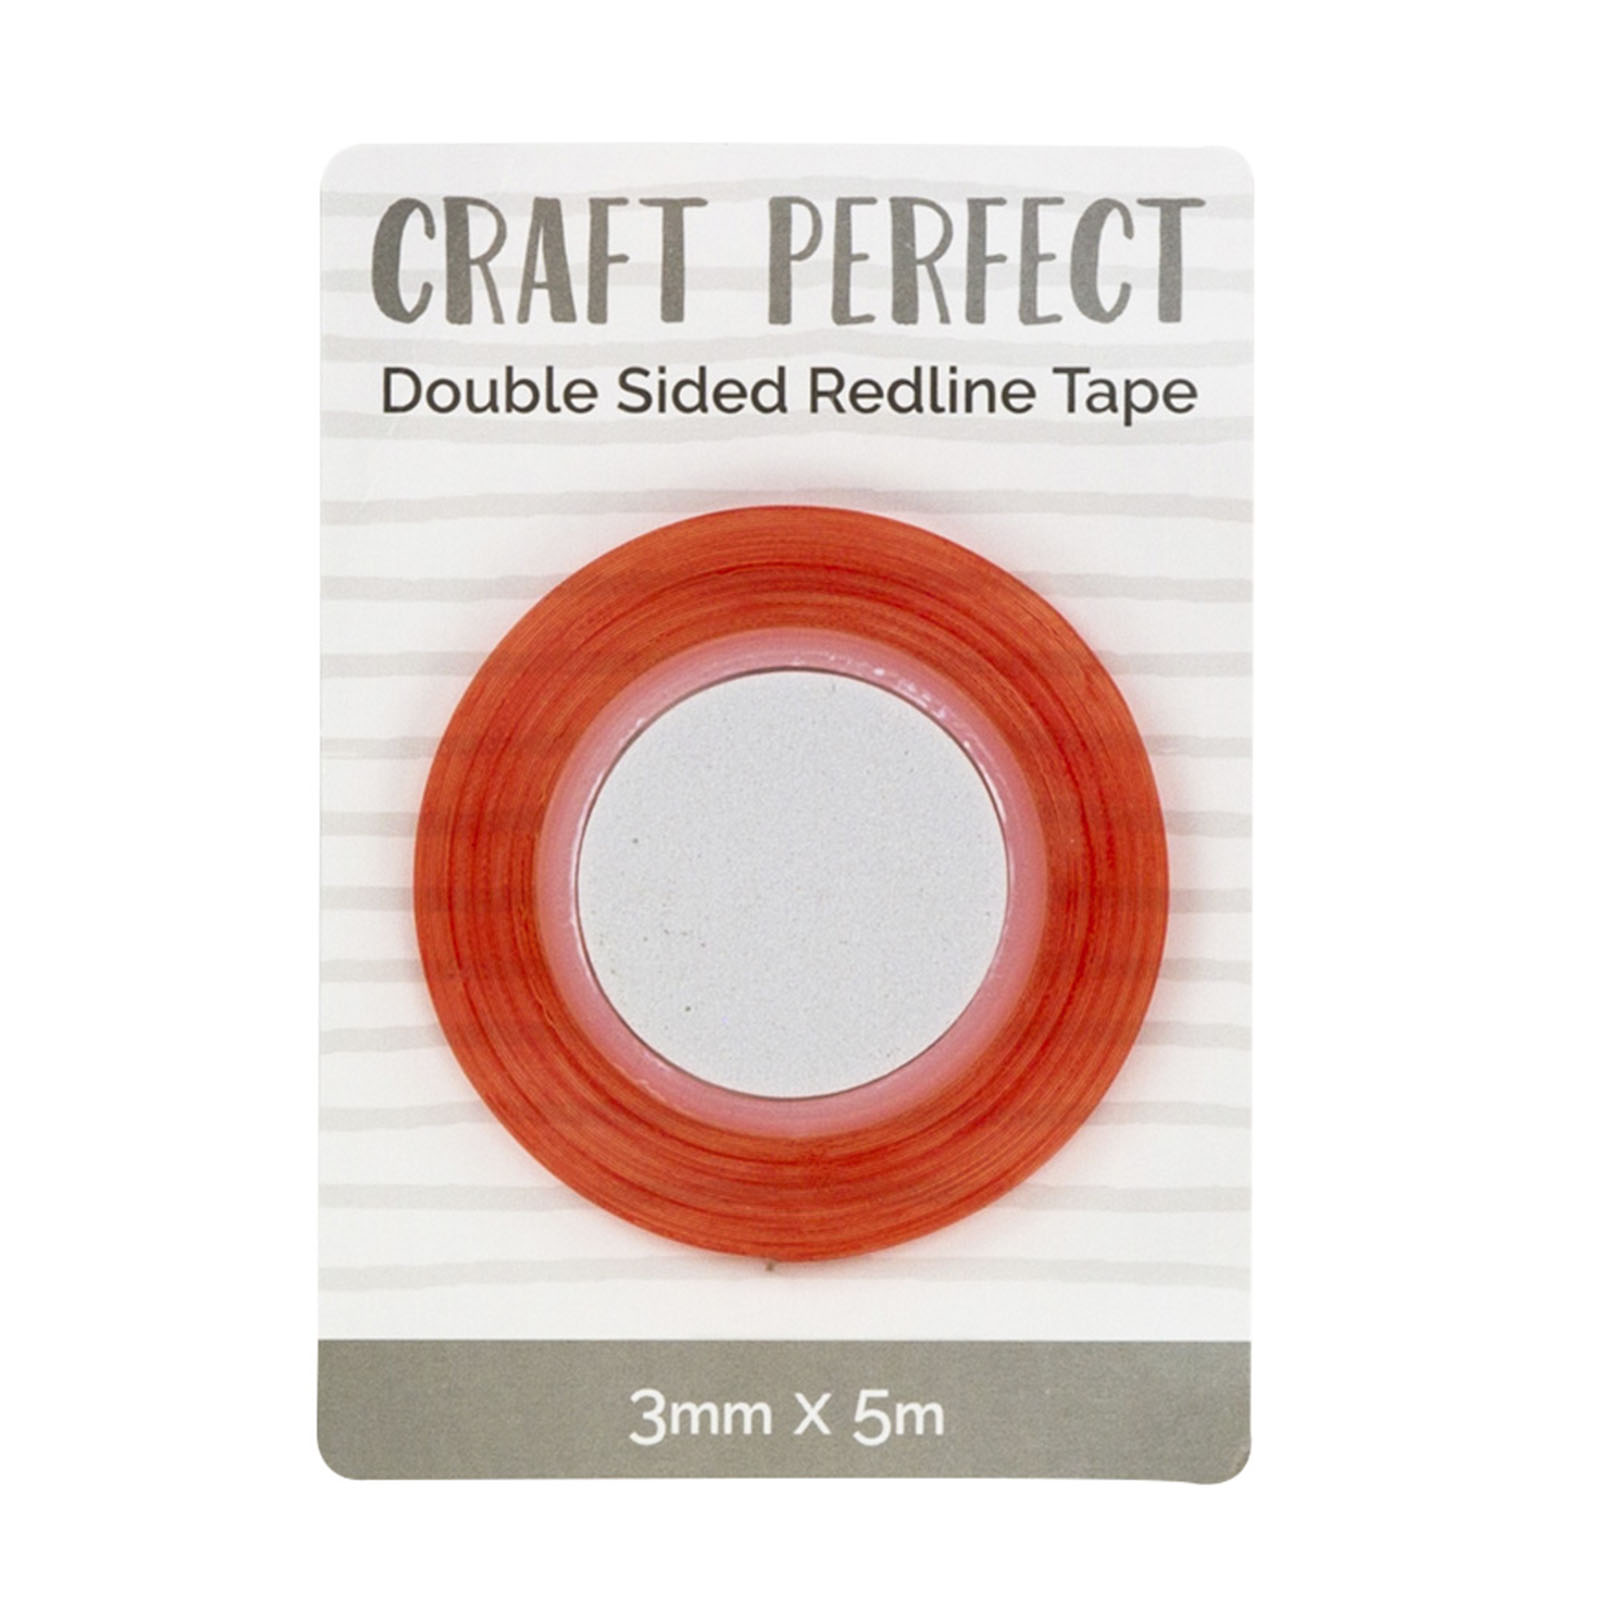 Craft Perfect • Dubbelzijdig Redline plakband 3mm